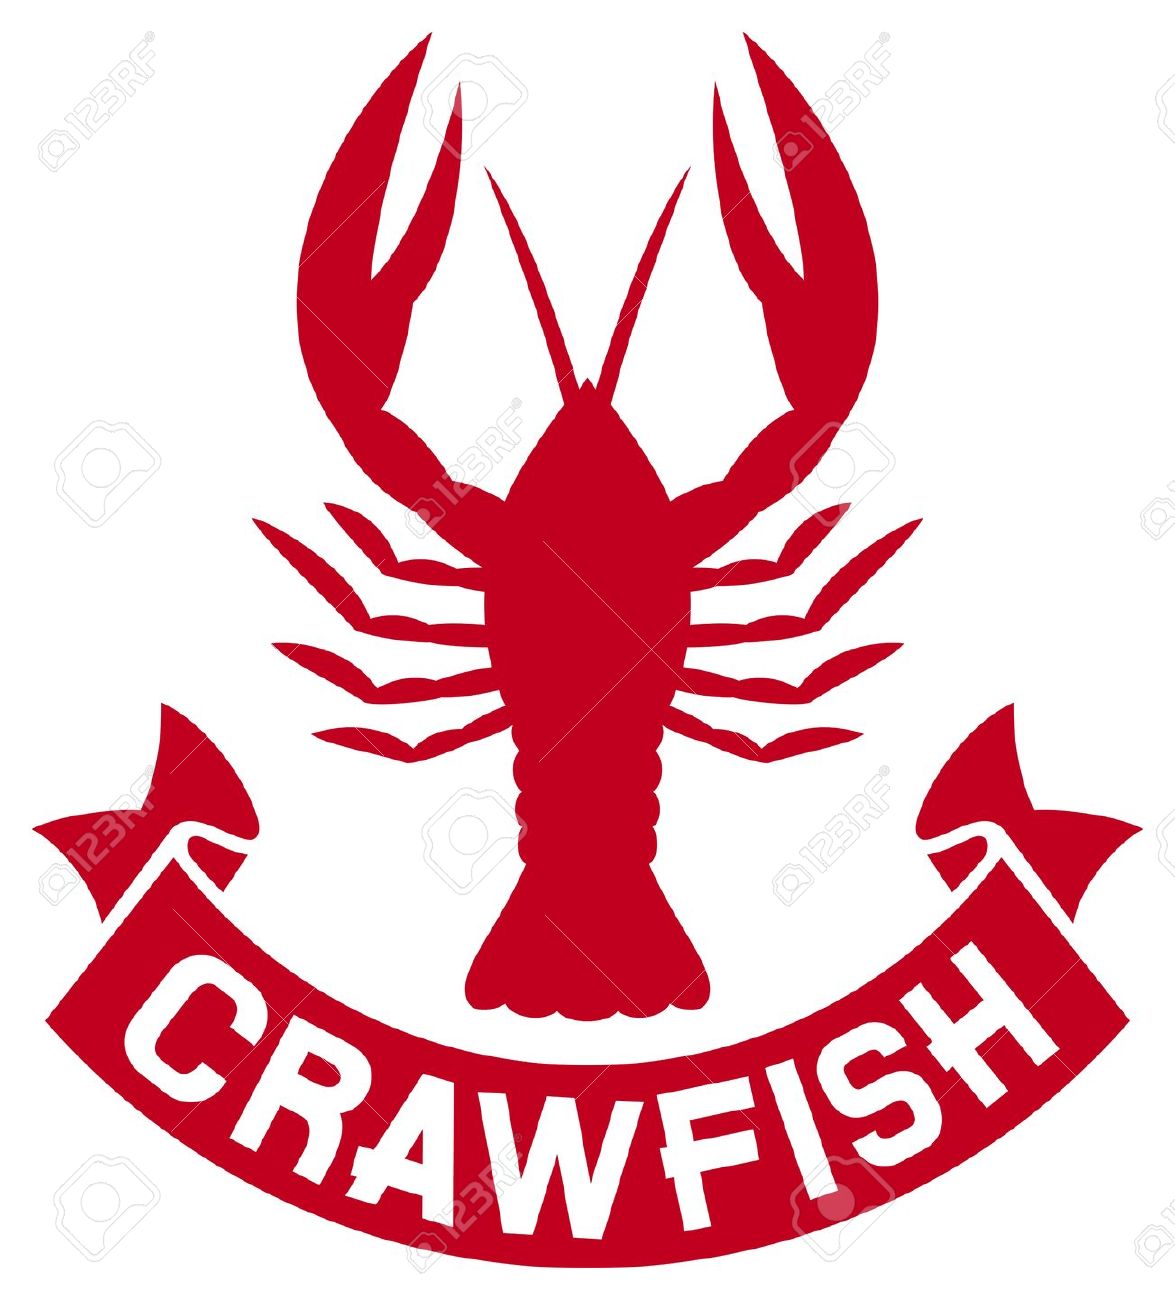 crawfish clipart